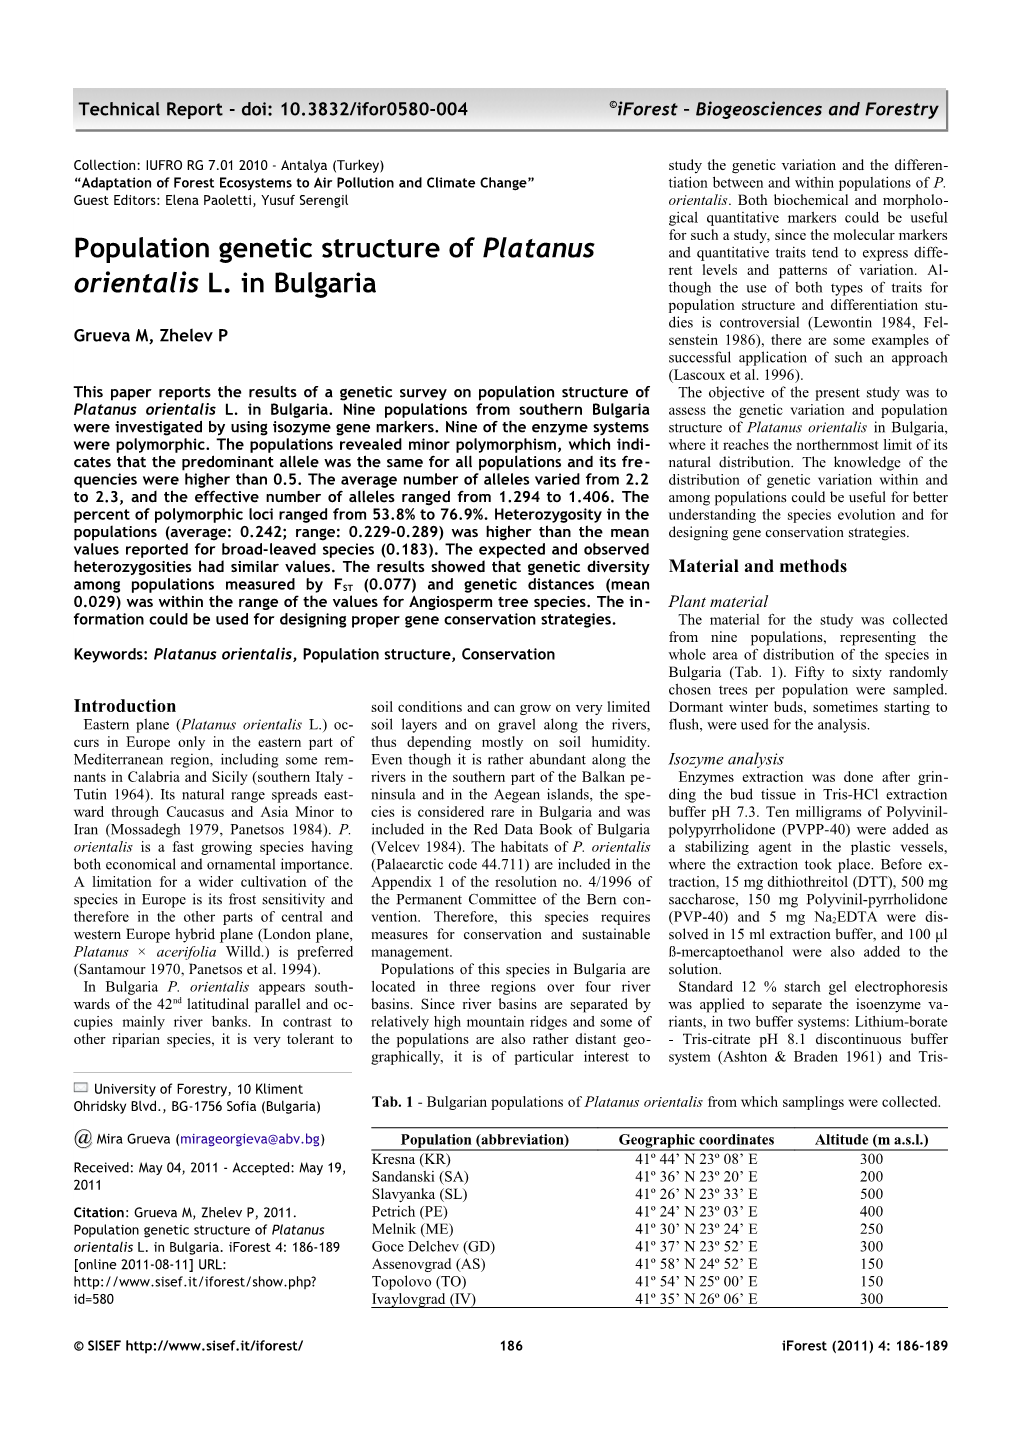 (2011). Population Genetic Structure of Platanus Orientalis L. in Bulgaria